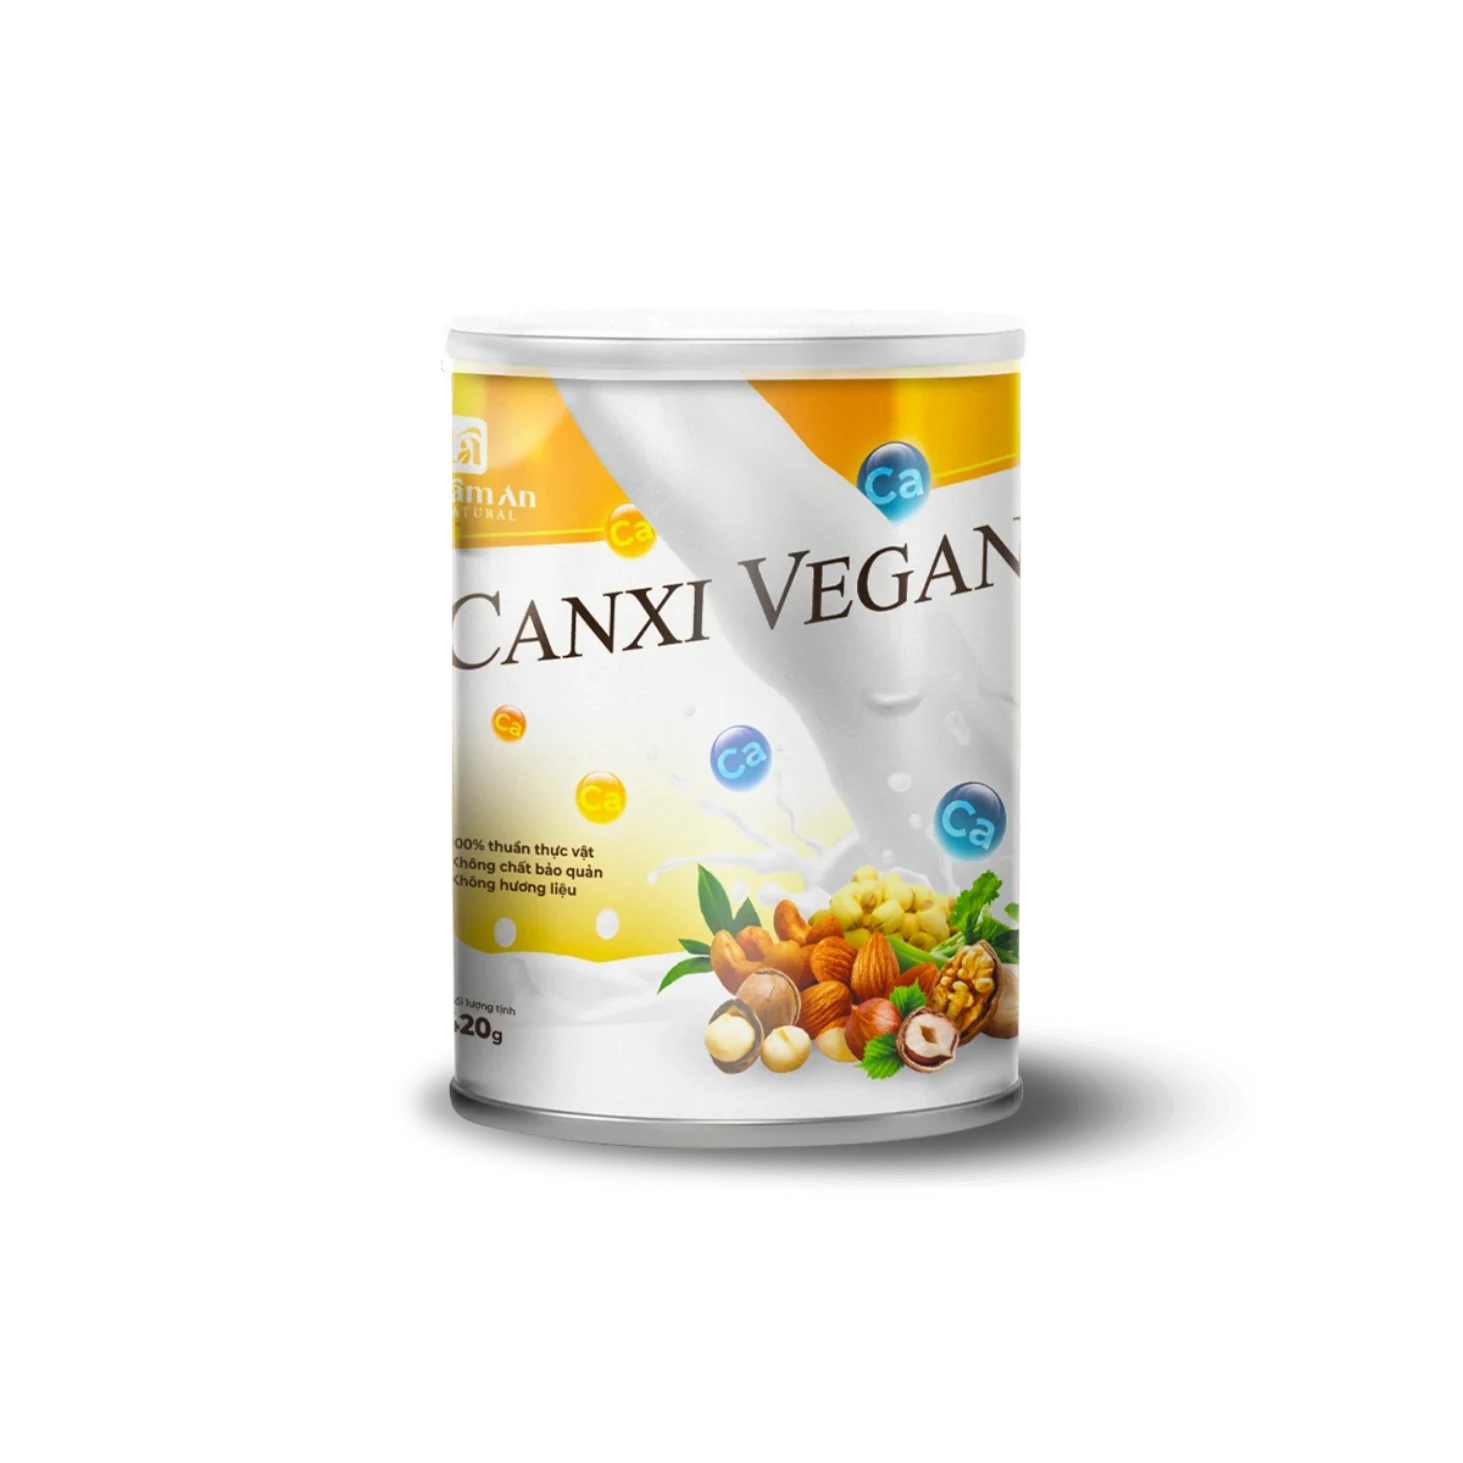 Canxi Vegan bổ sung canxi cho cơ thể